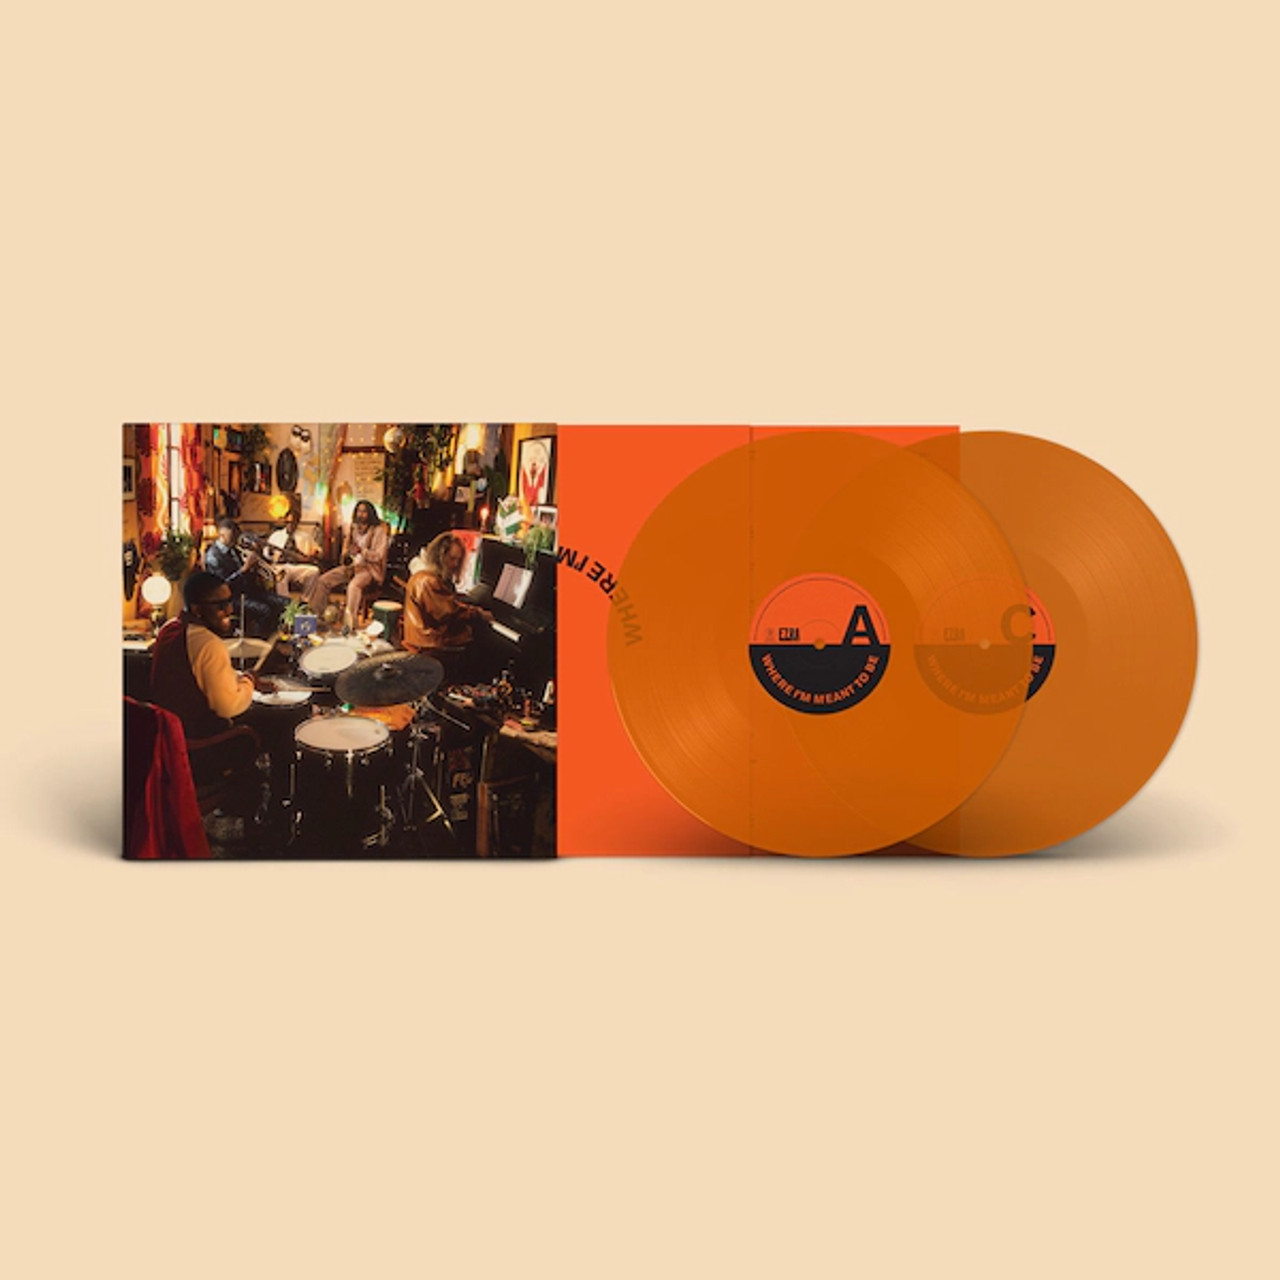 Double orange vinyl